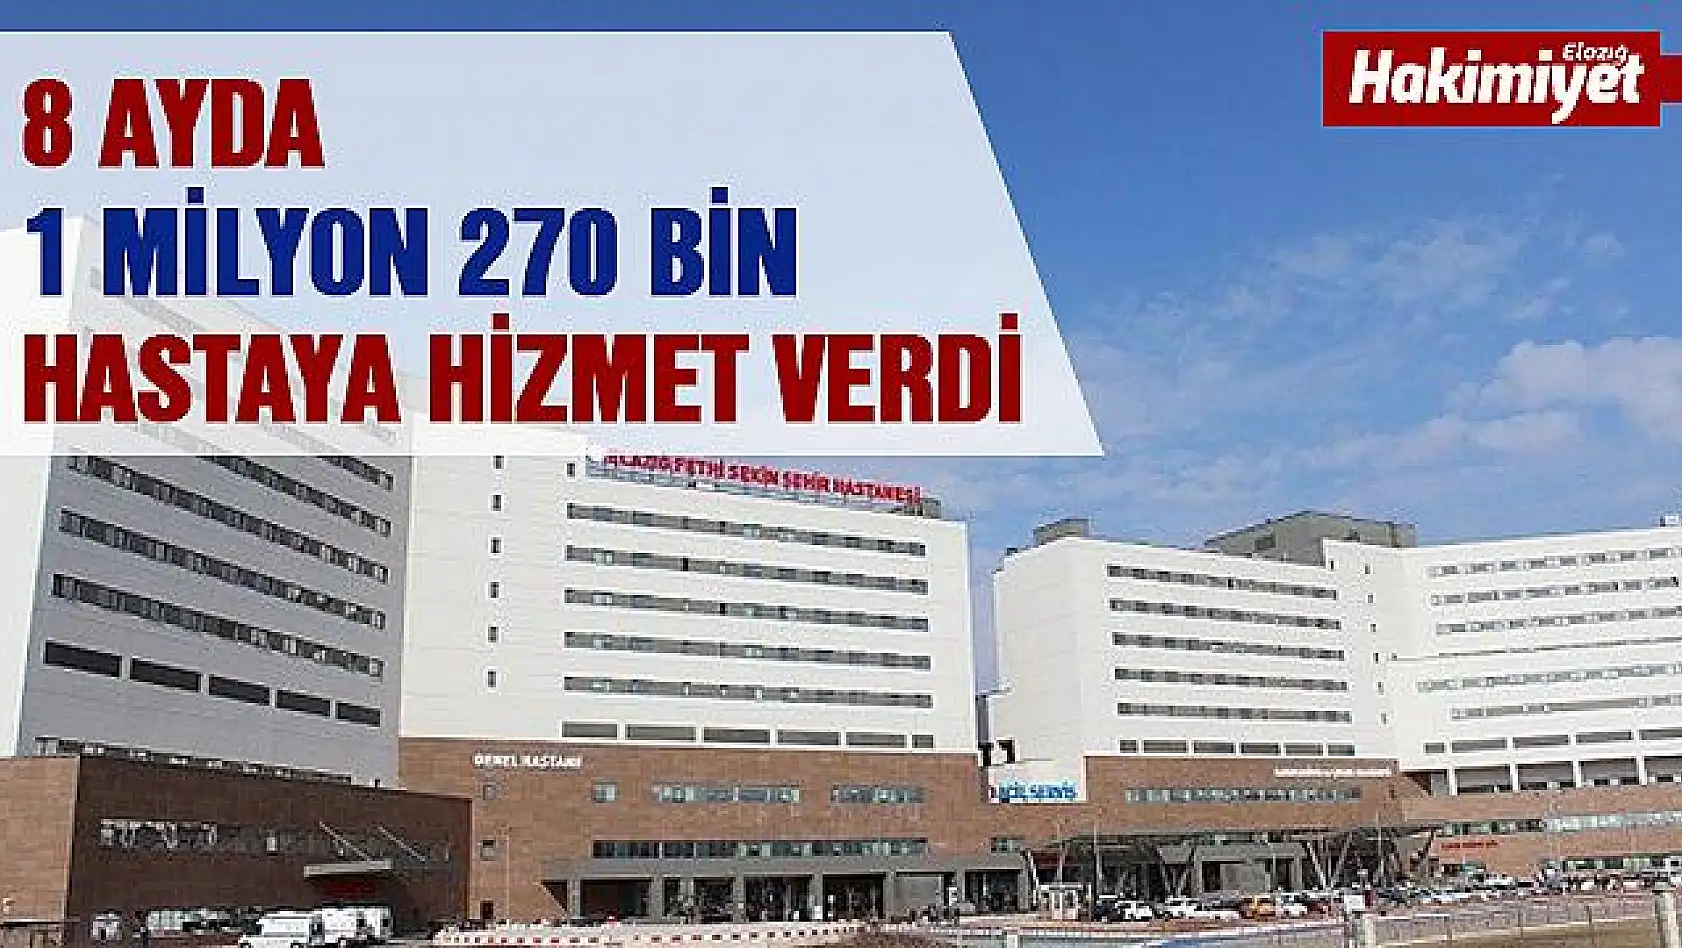 Şehir Hastanesi,1 milyon 270 bin hastaya hizmet verdi